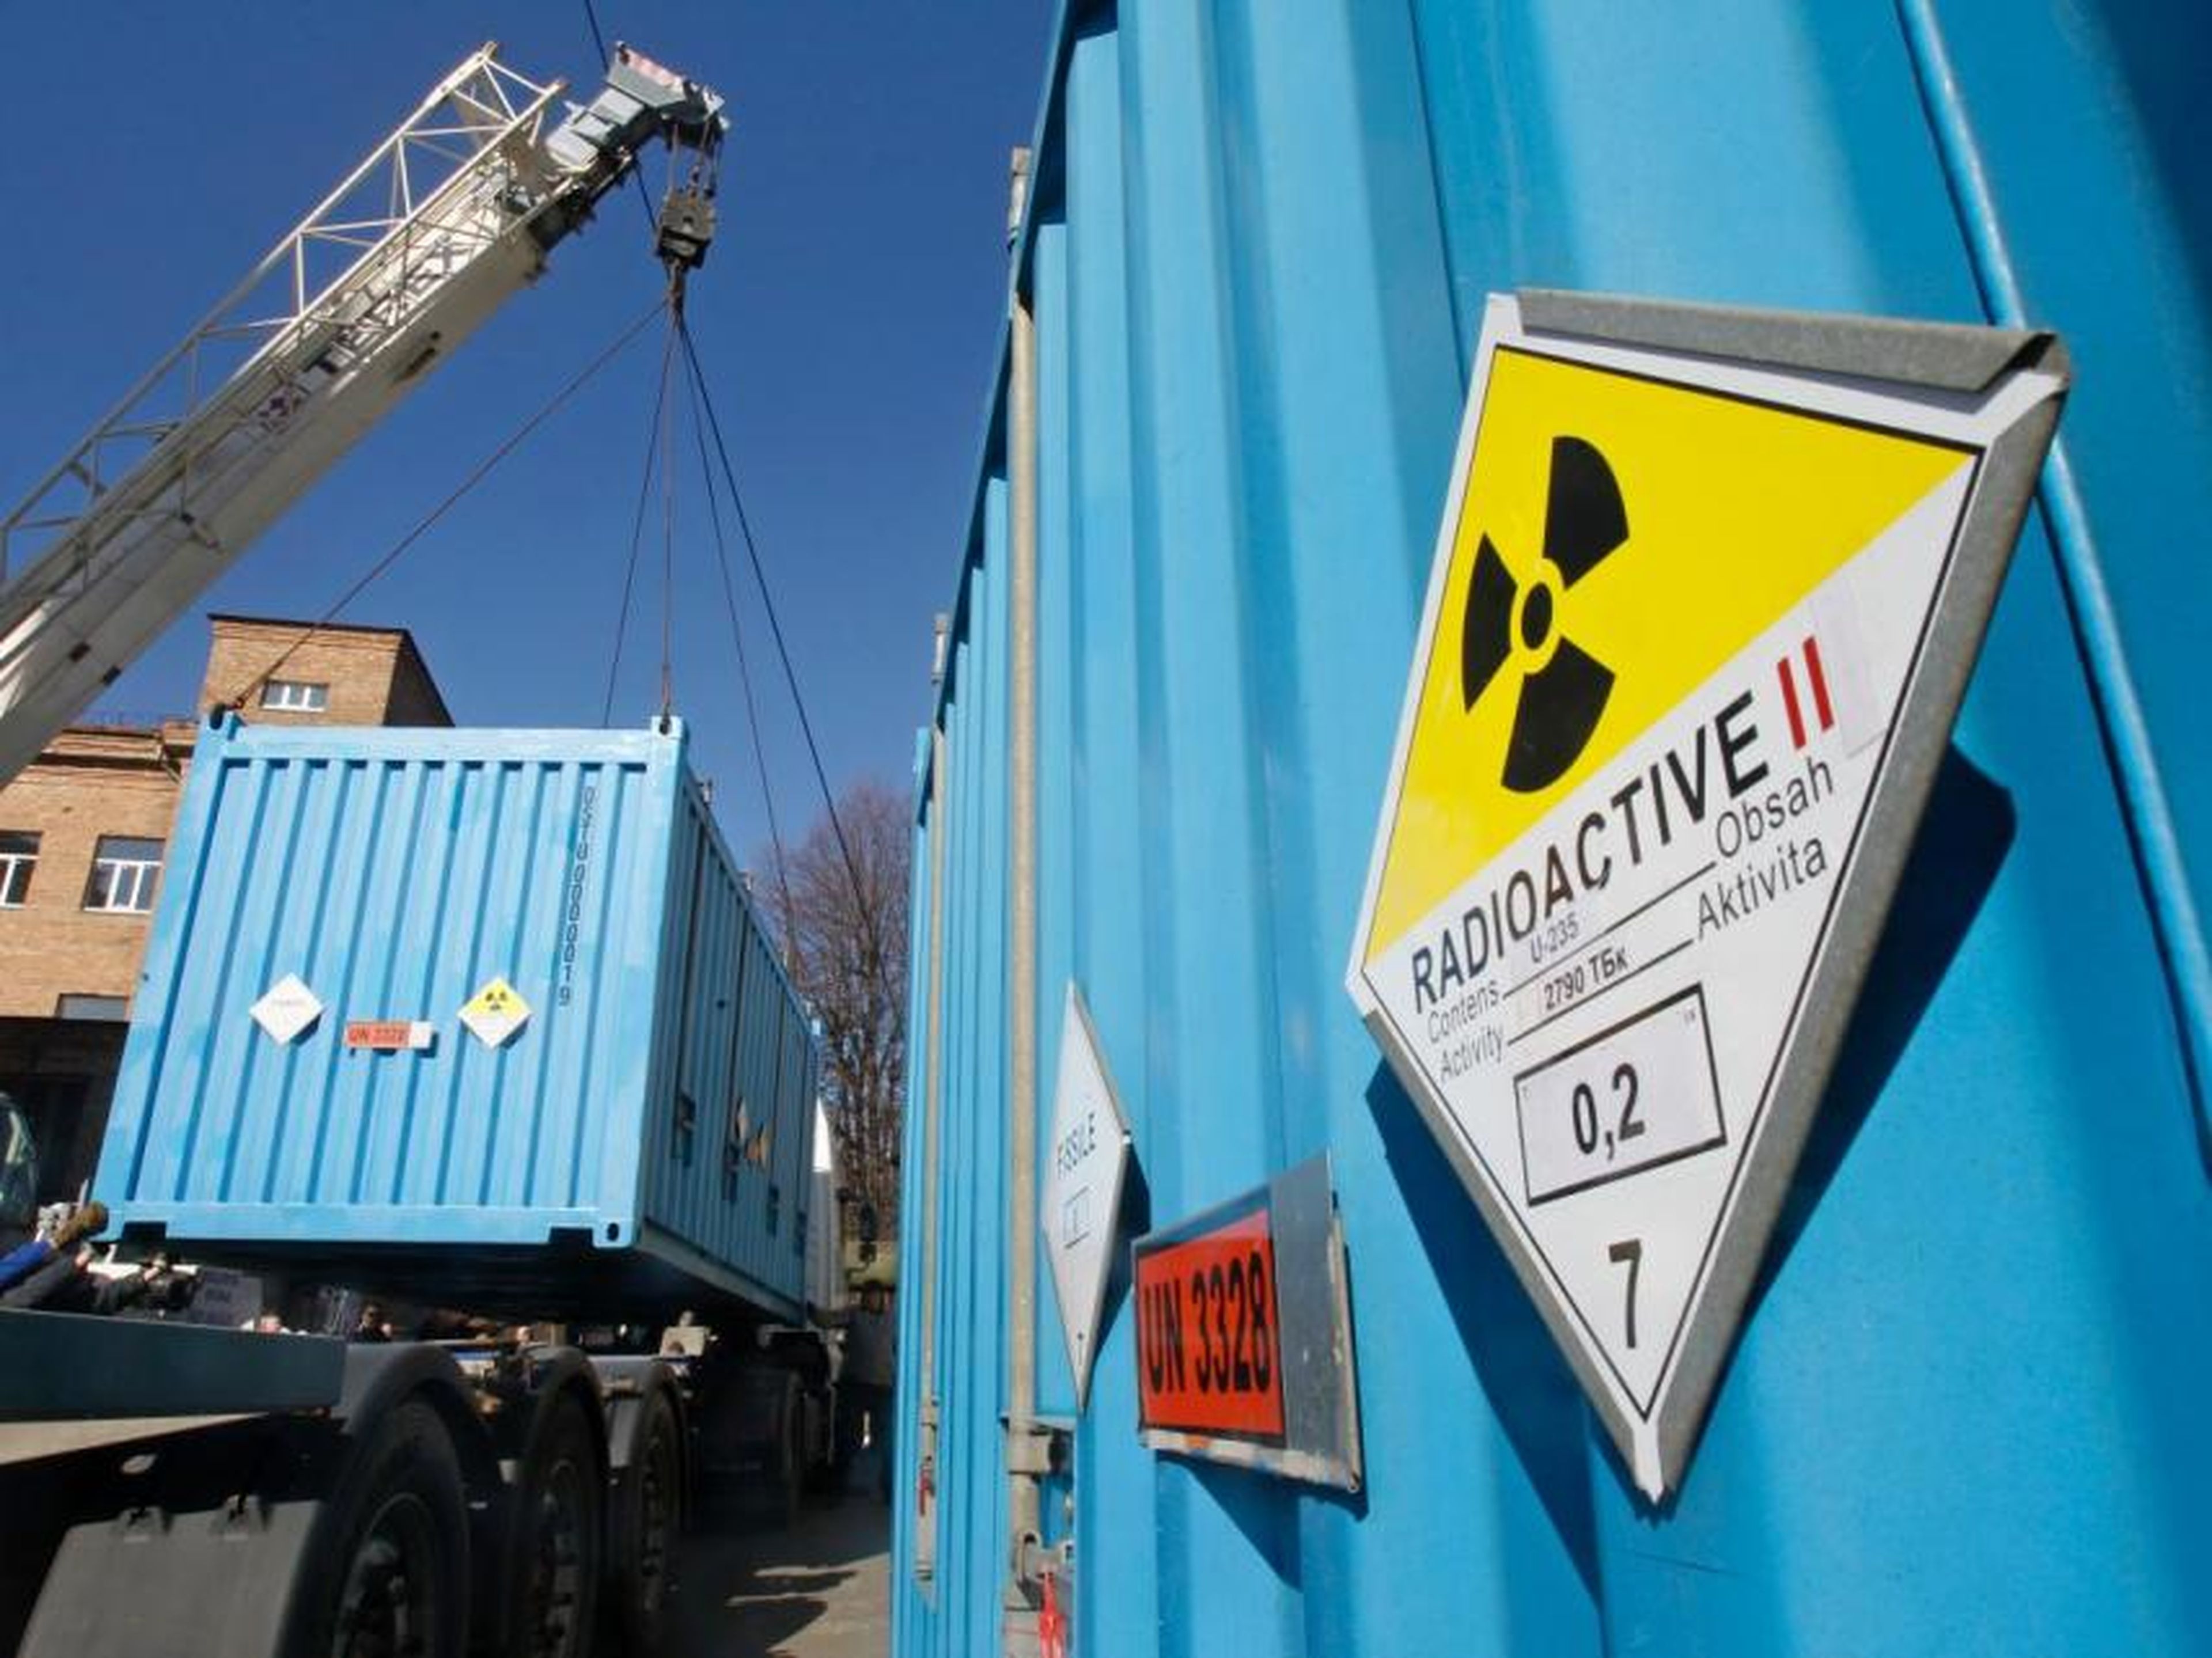 Trabajadores colocan un contenedor con uranio altamente enriquecido en un camión en una instalación de investigación nuclear en Kiev el 24 de marzo de 2012.